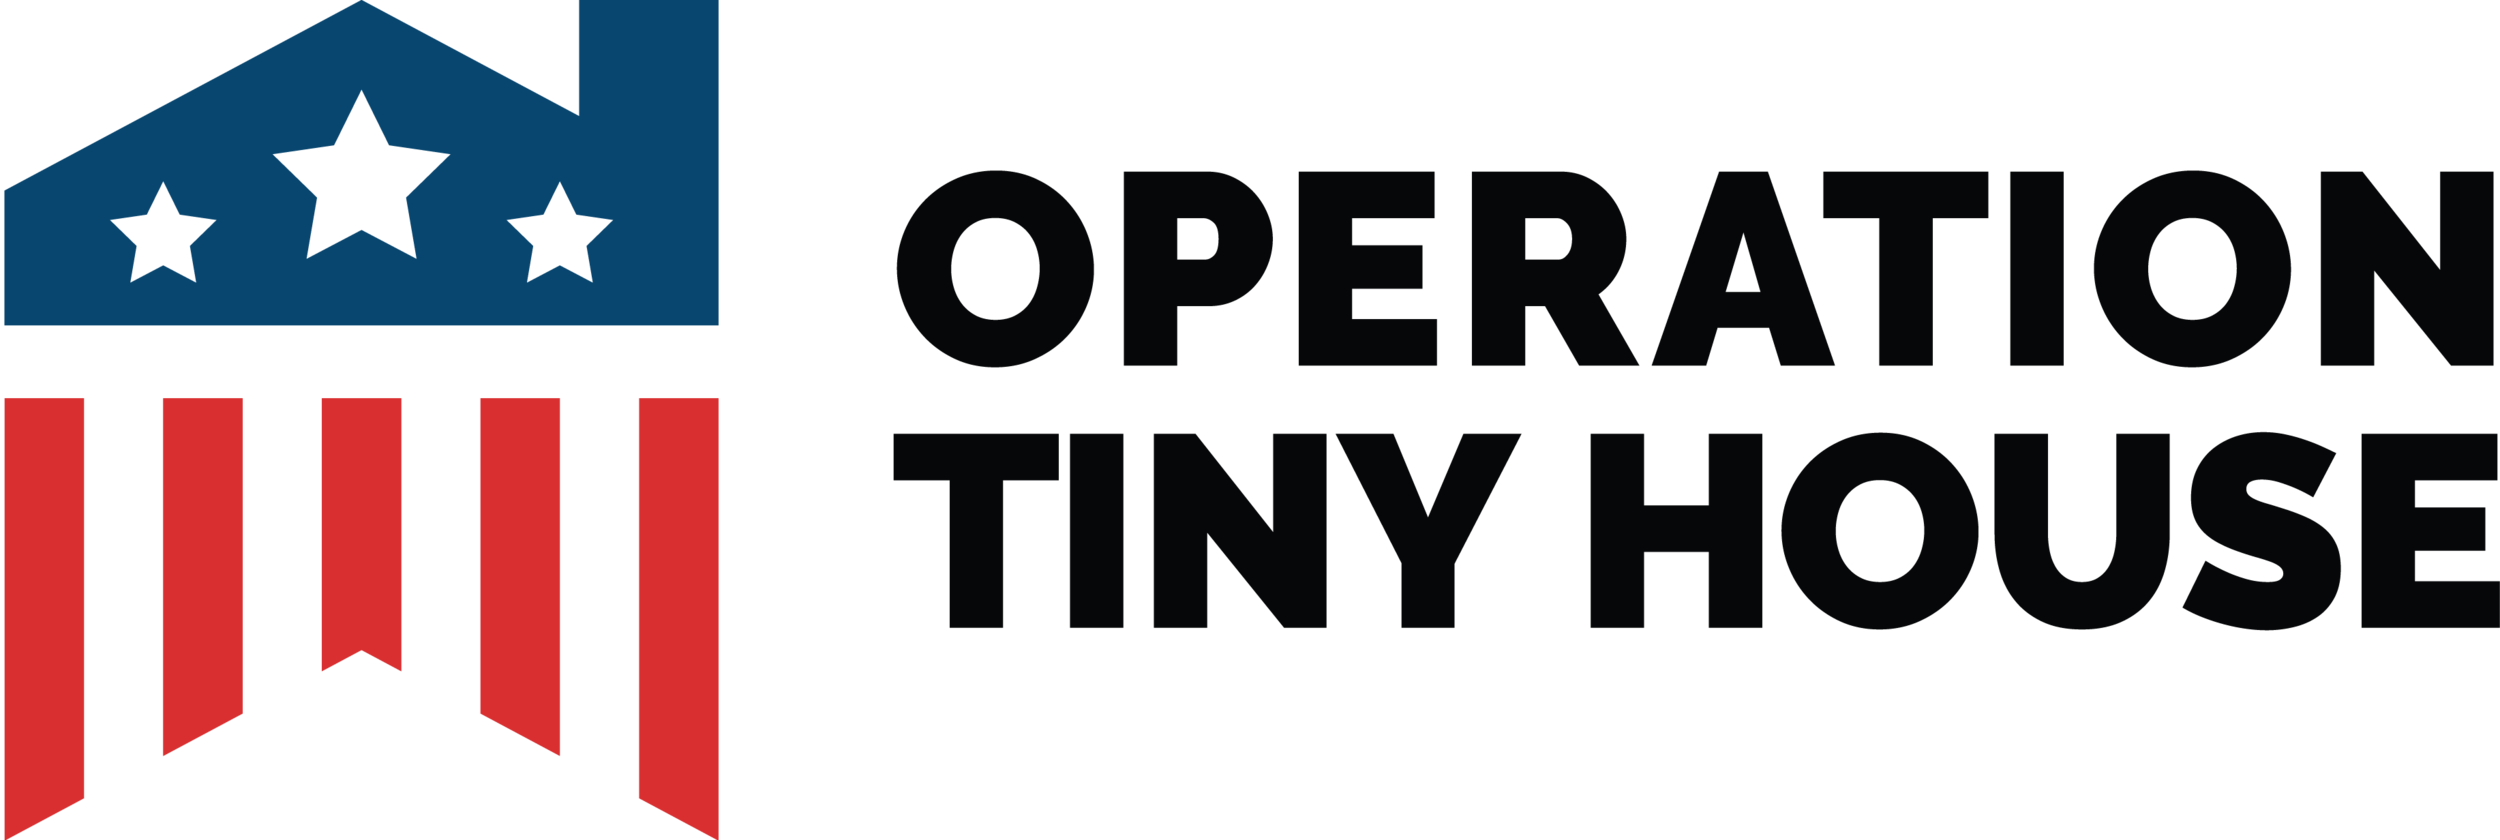 Operation Tiny House